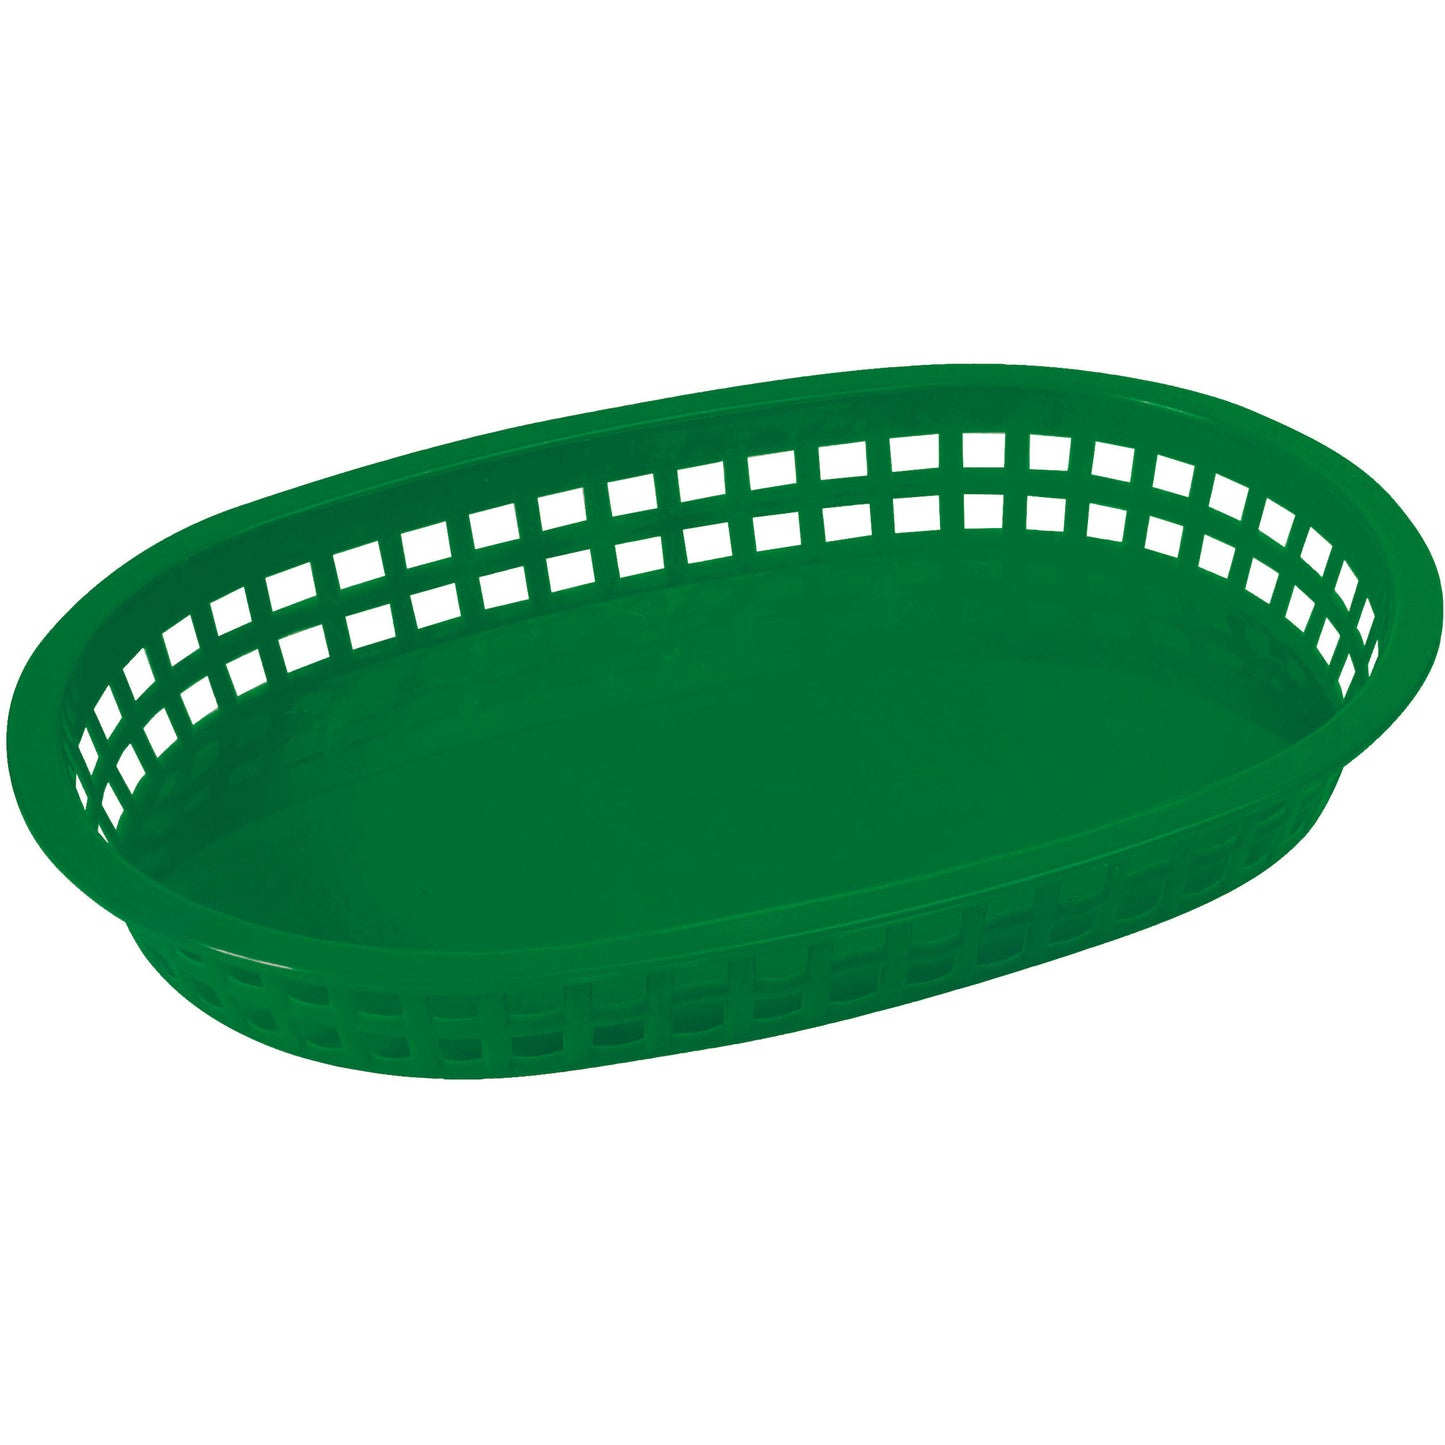 PLB-G - Oval Platter Baskets, 10-3/4" x 7-1/4" x 1-1/2" - Green